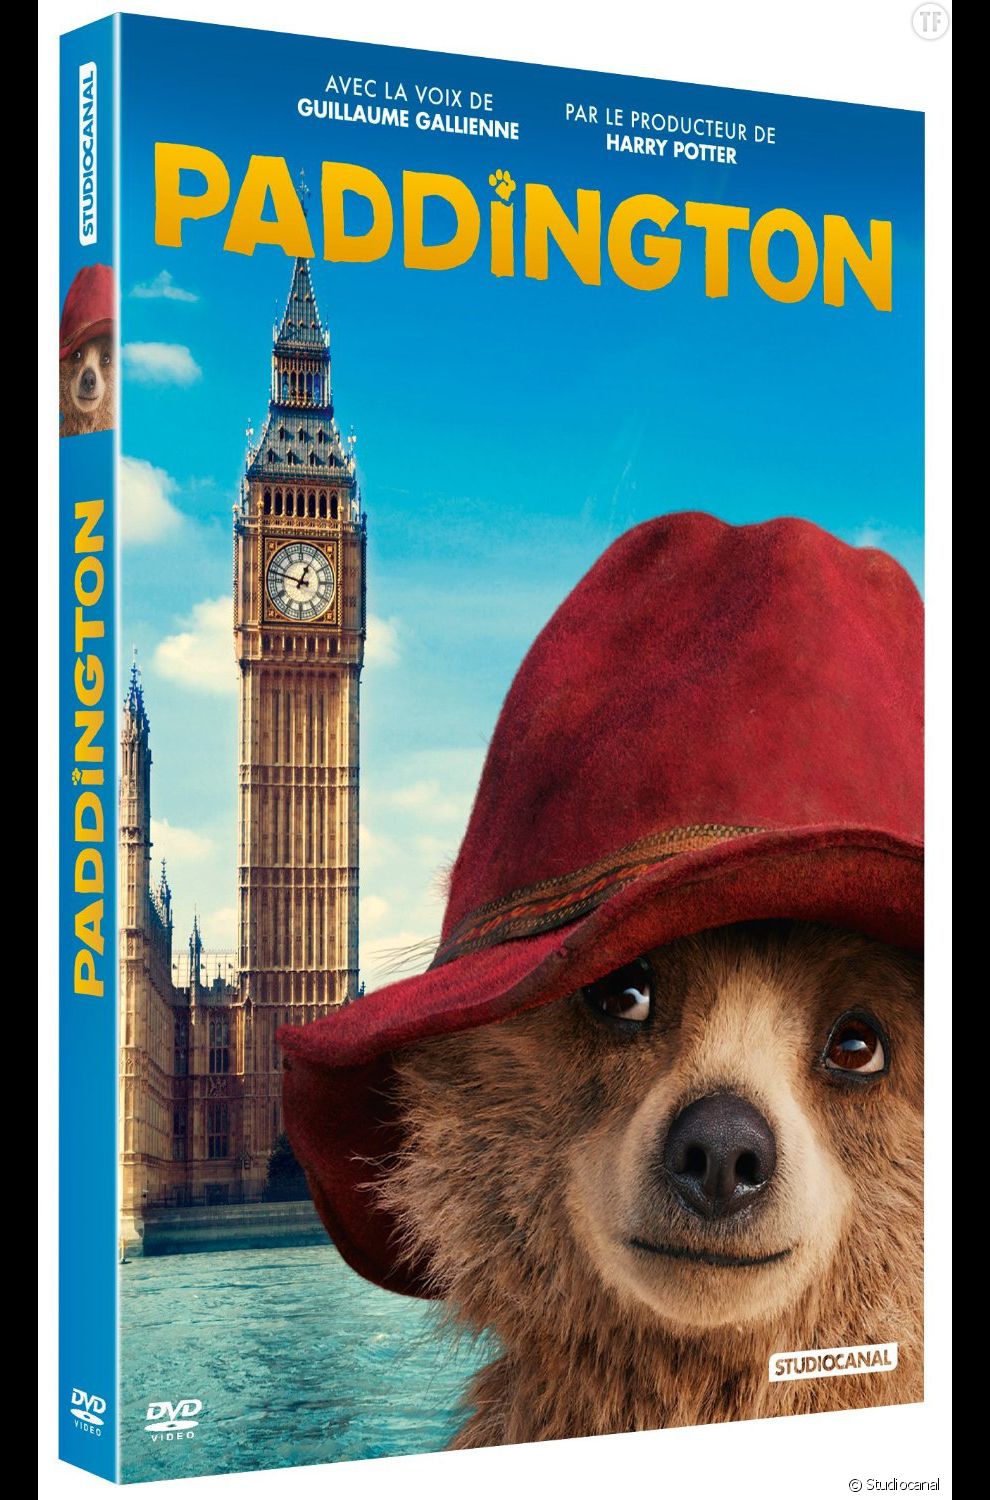 Le DVD de &quot;Paddington&quot; est disponible depuis le 3 avril 2015.